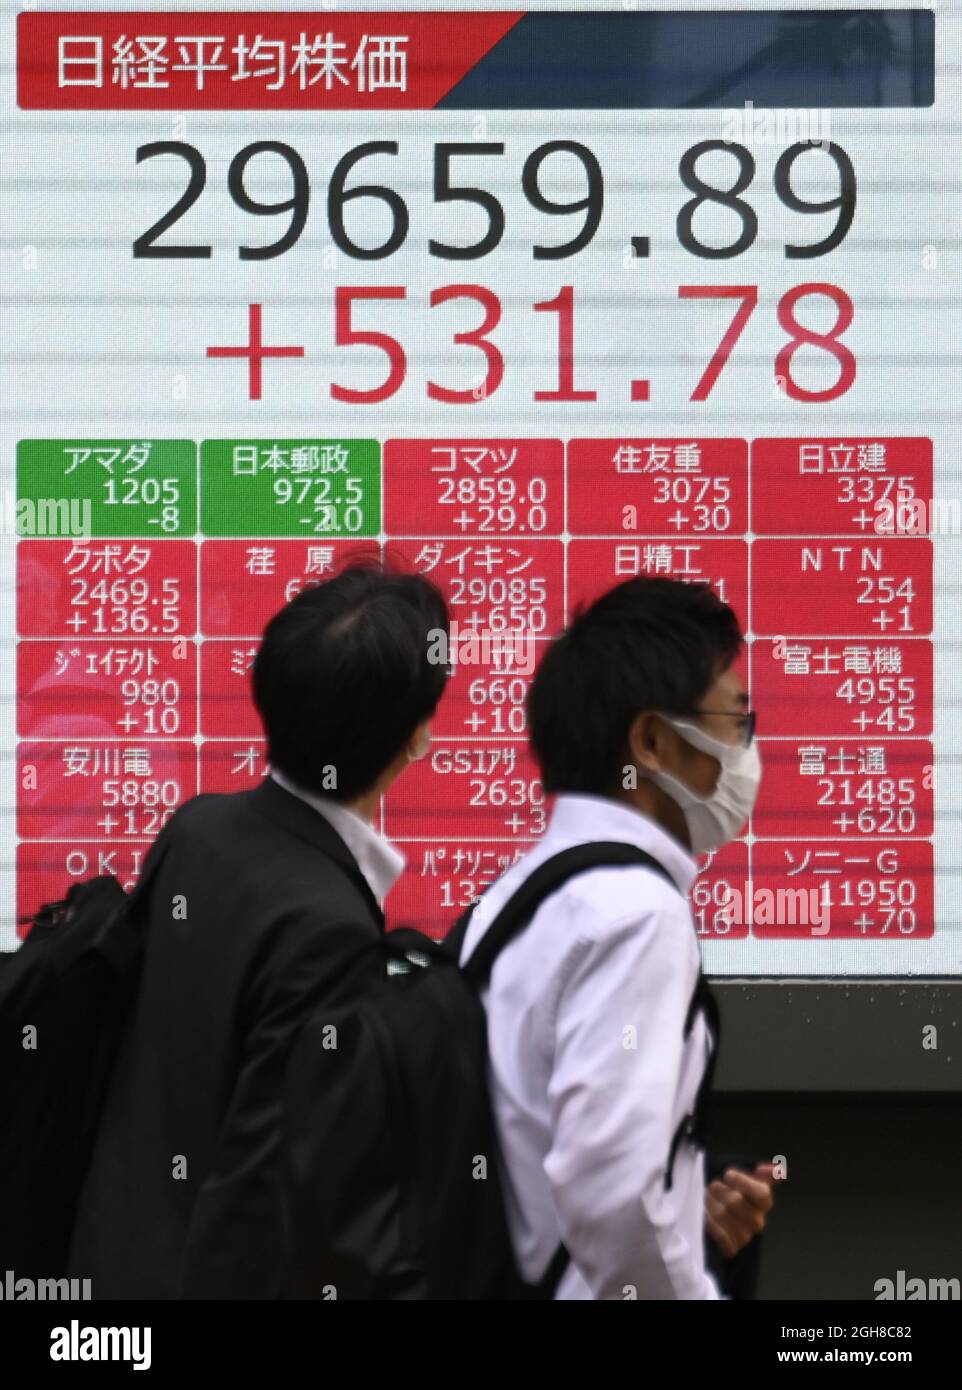 Una pantalla de datos financieros en el camino en Tokio muestra que el Nikkei Stock Average, de 225 cifras, terminó en 29.659,89, casi un máximo de cinco meses, el 6 de septiembre de 2021. (Kyodo)==Kyodo Photo via Newscom Foto de stock